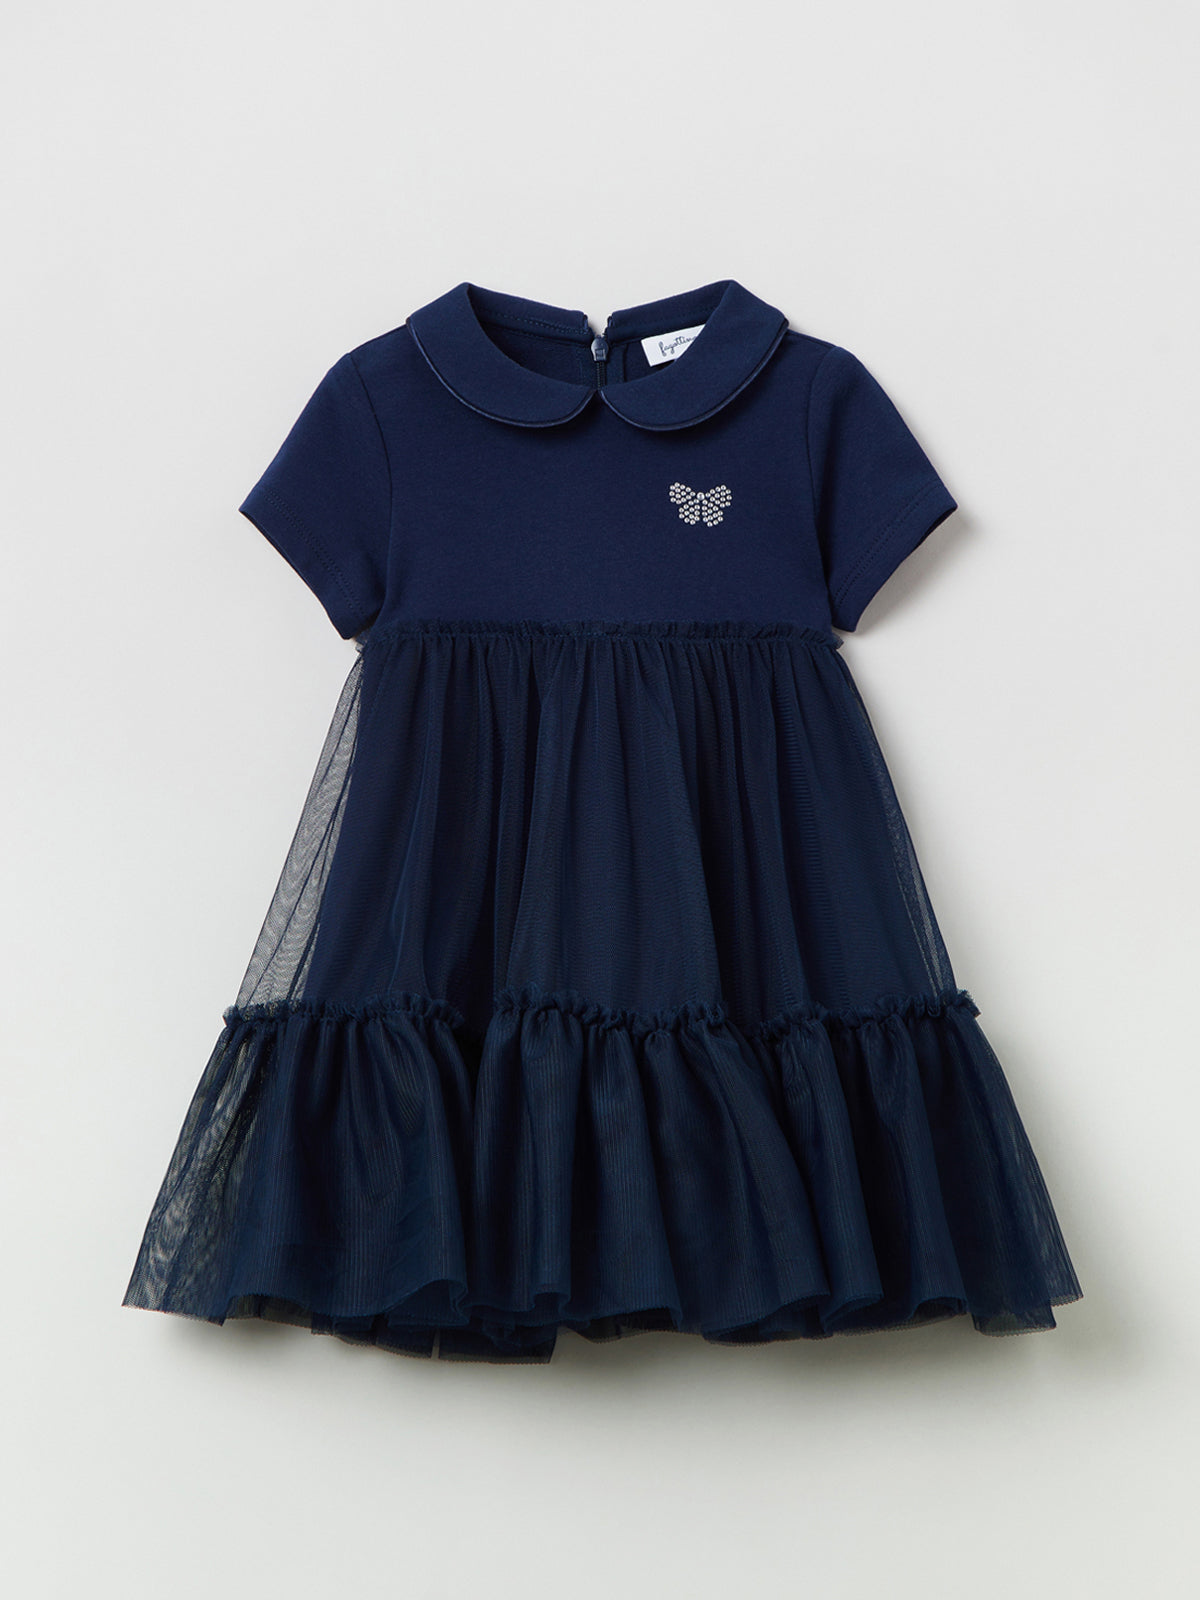 שמלת פרנץ' טרי בשילוב טול / תינוקות